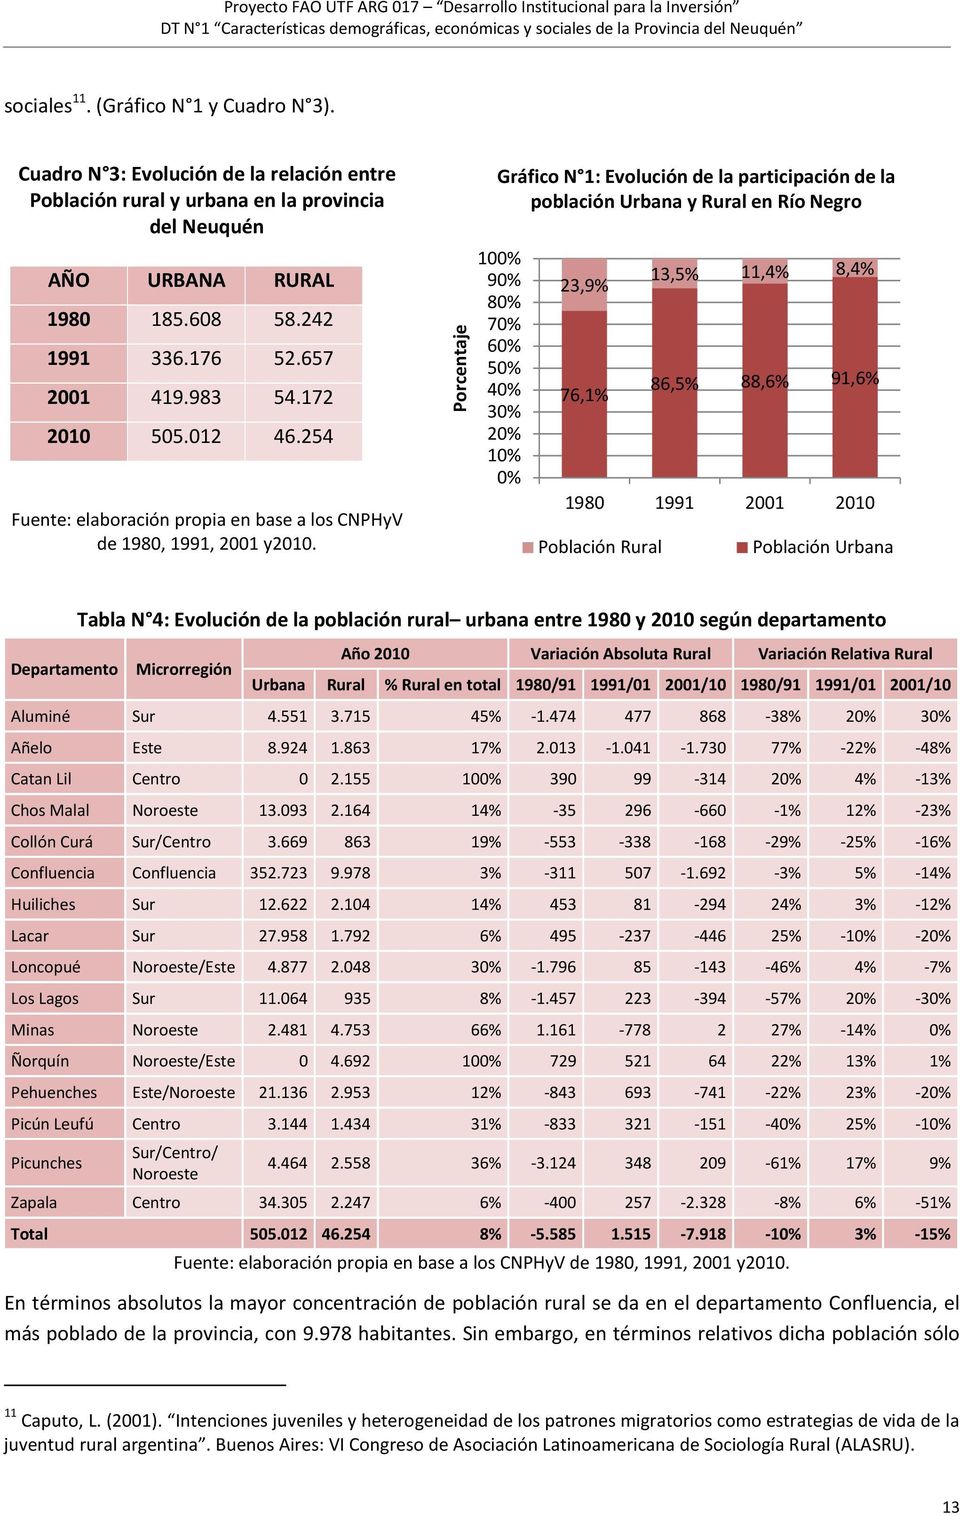 Porcentaje Gráfico N 1: Evolución de la participación de la población Urbana y Rural en Río Negro 100% 90% 80% 70% 60% 50% 40% 30% 20% 10% 0% 23,9% 76,1% 13,5% 11,4% 8,4% 86,5% 88,6% 91,6% 1980 1991